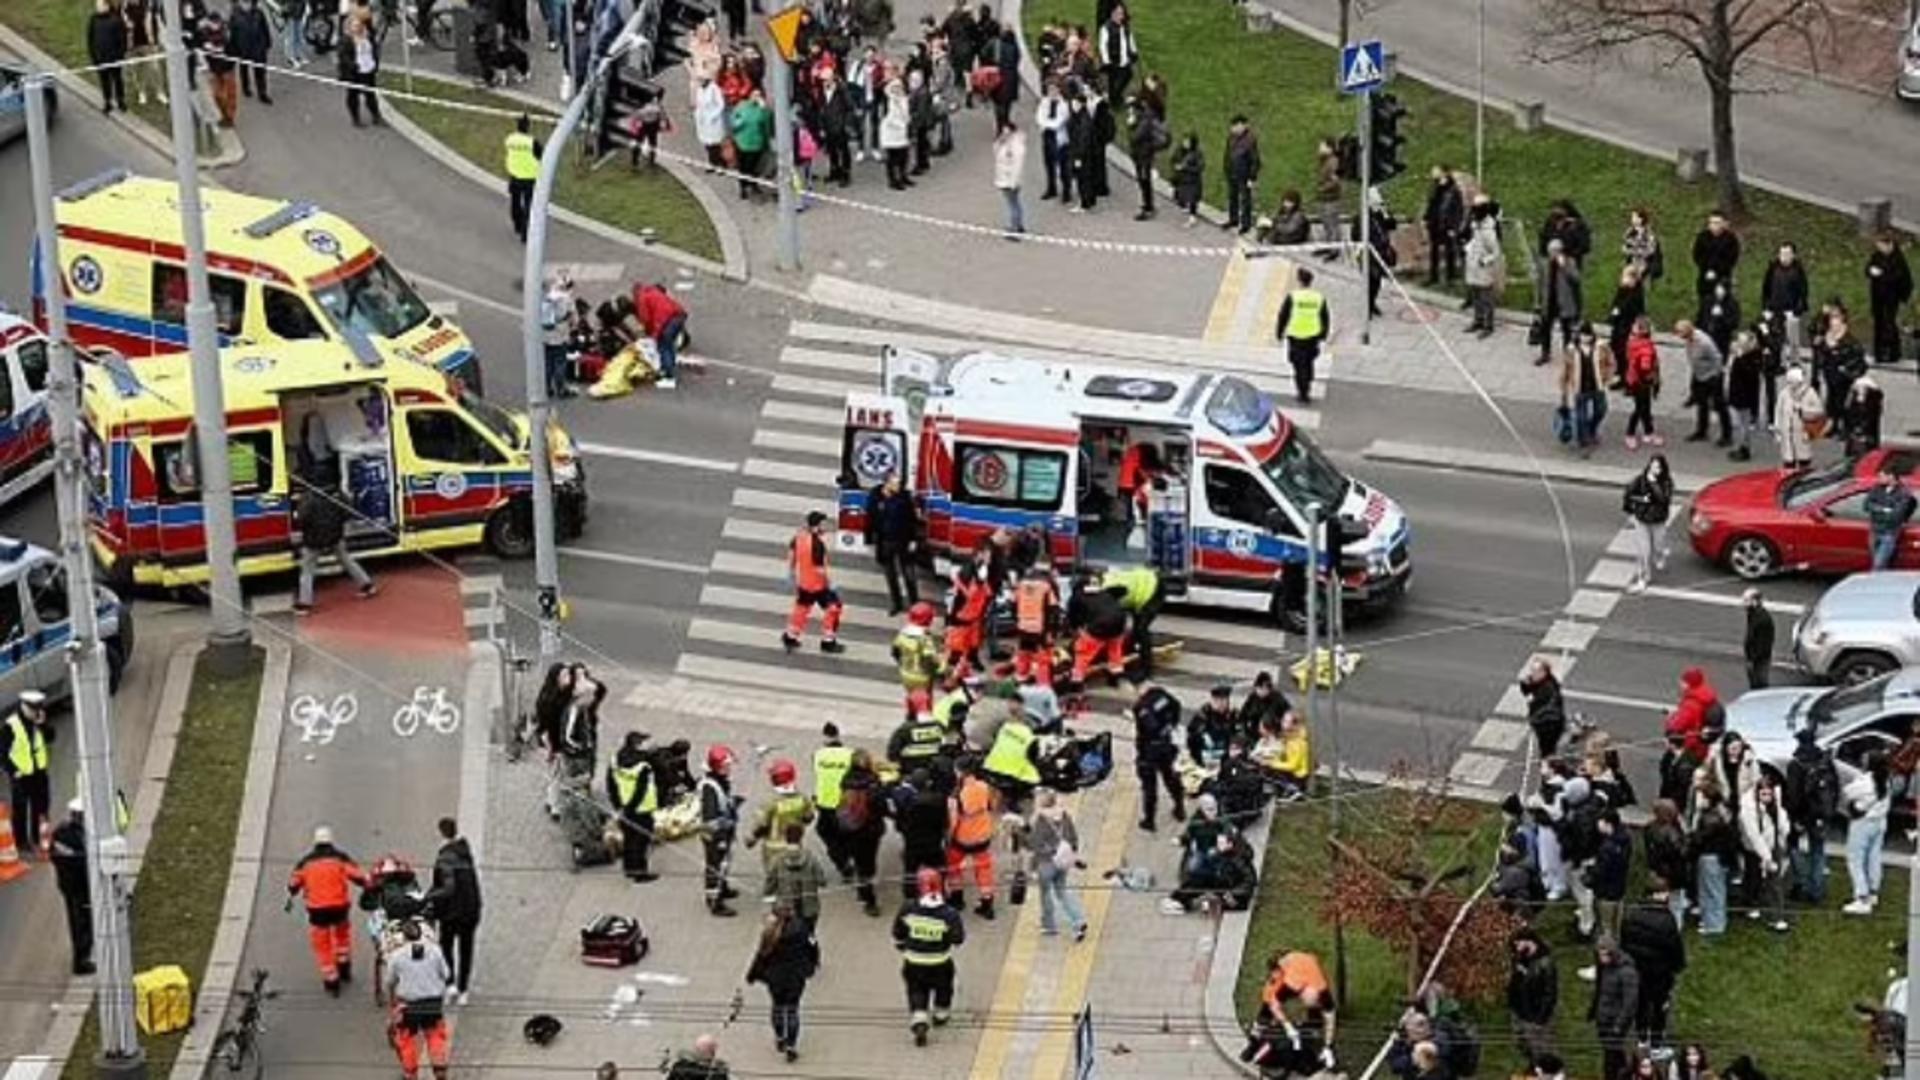 Scene de groază în Polonia, după ce o mașină a intrat în mulțime. 17 răniți, bilanț provizoriu - FOTO+VIDEO